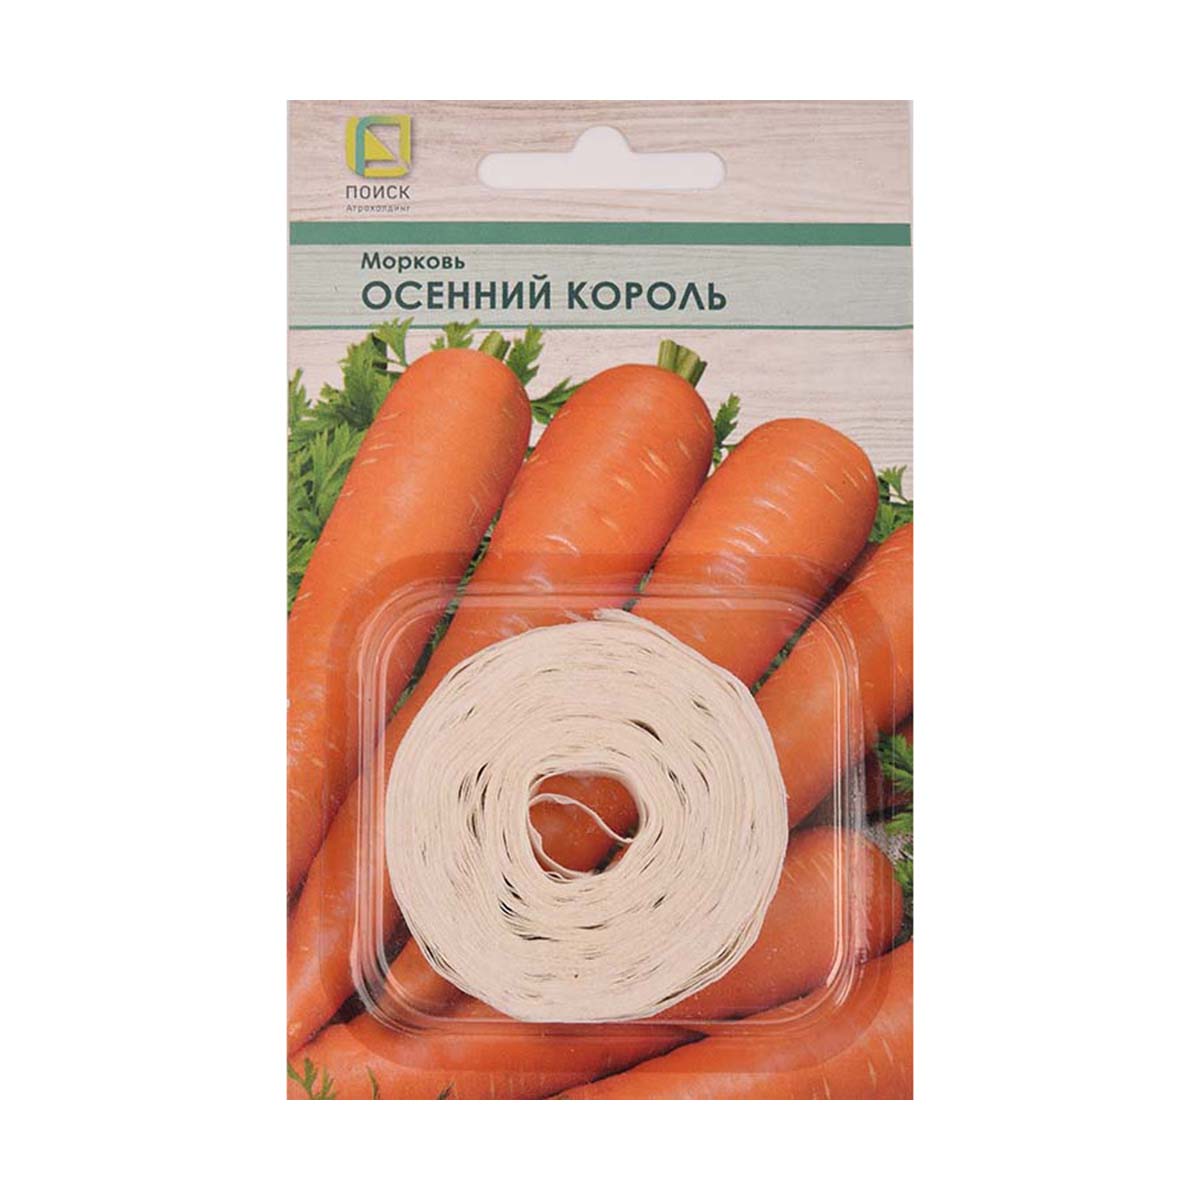 Семена на ленте морковь "осенний король" 8 м (10/100) "поиск"